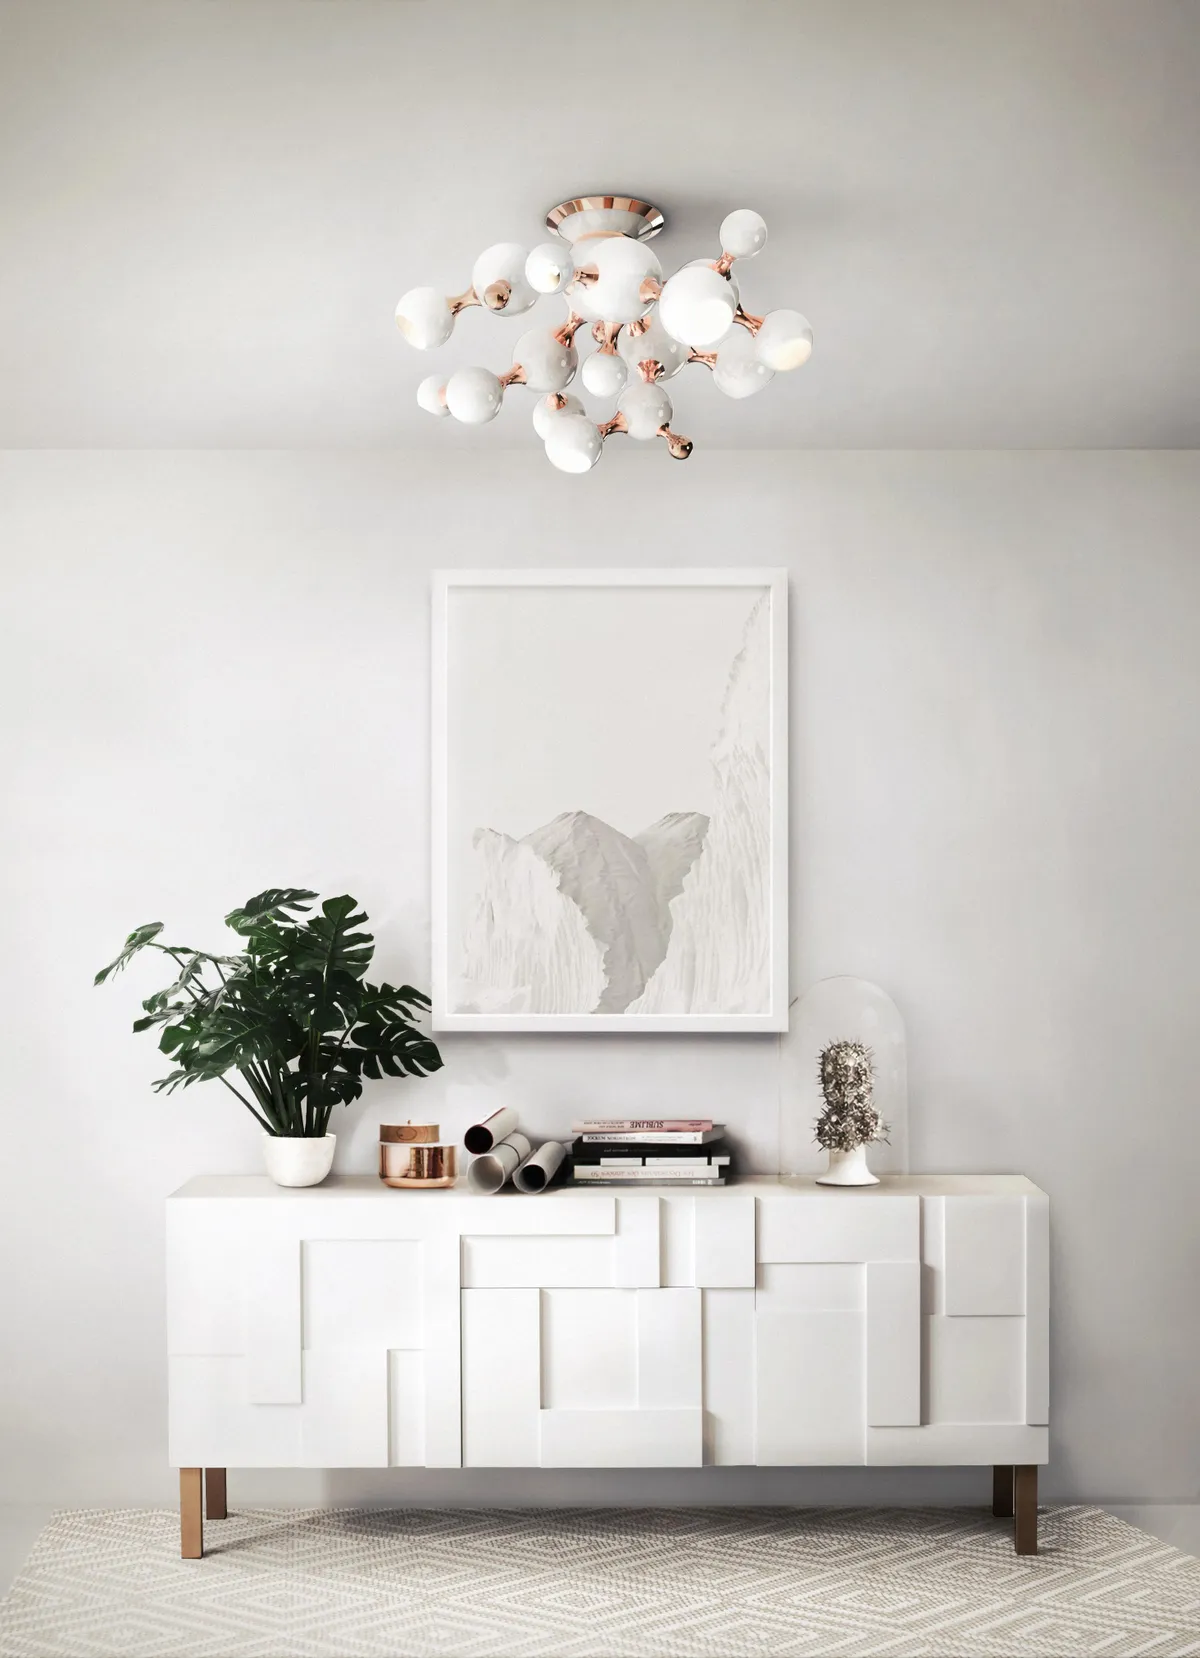 white living room ideas